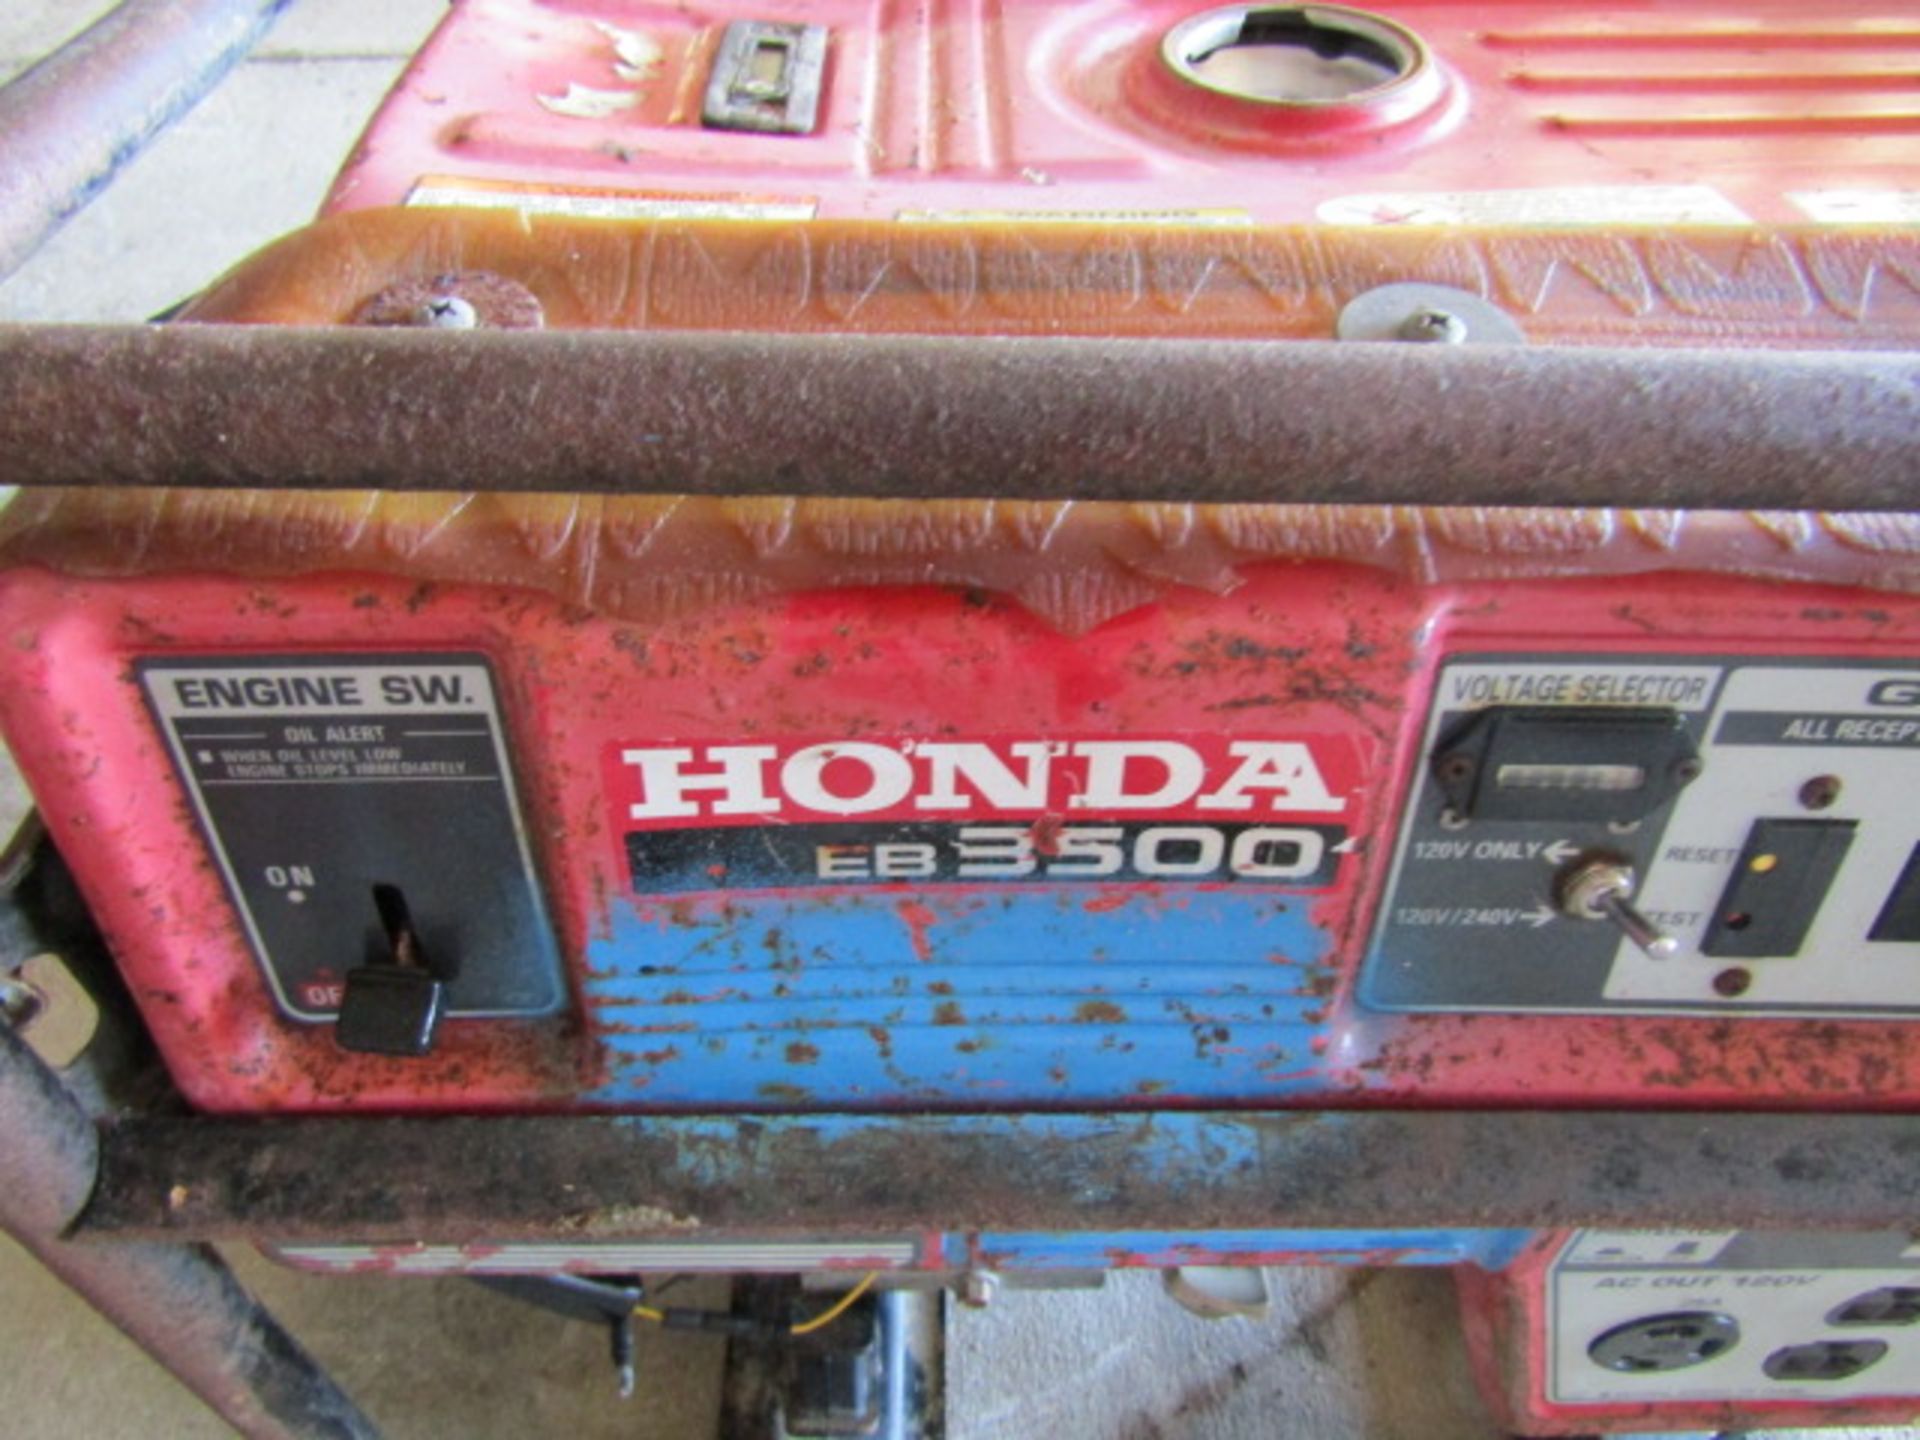 Honda EB3500 Generator (Not Working), 240/120 Volt, Honda Electronic Ignition, - Image 2 of 3